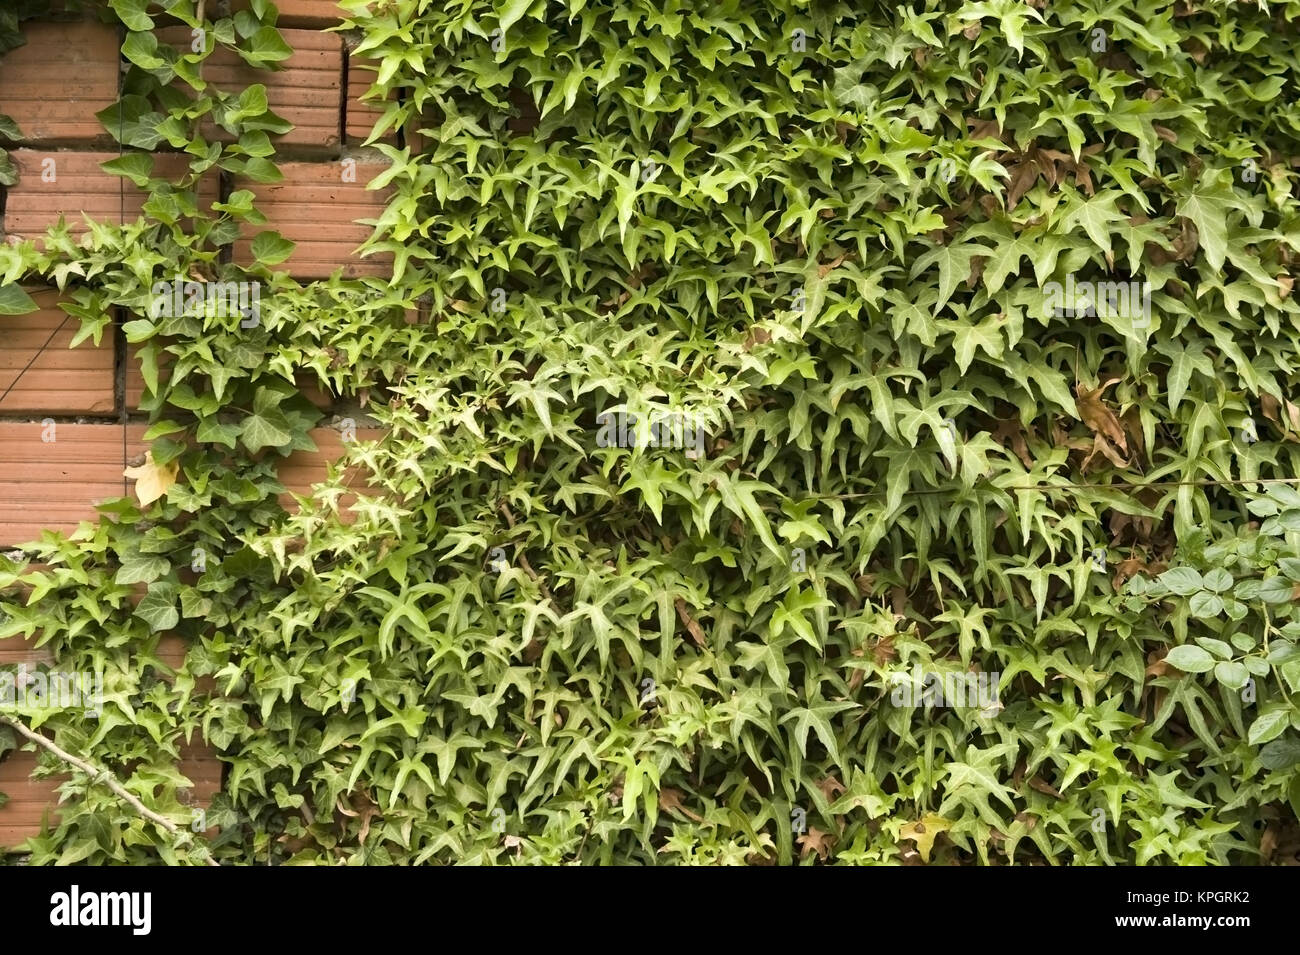 Kletterpflanzen an Ziegelmauer - creeper on a wall Stock Photo